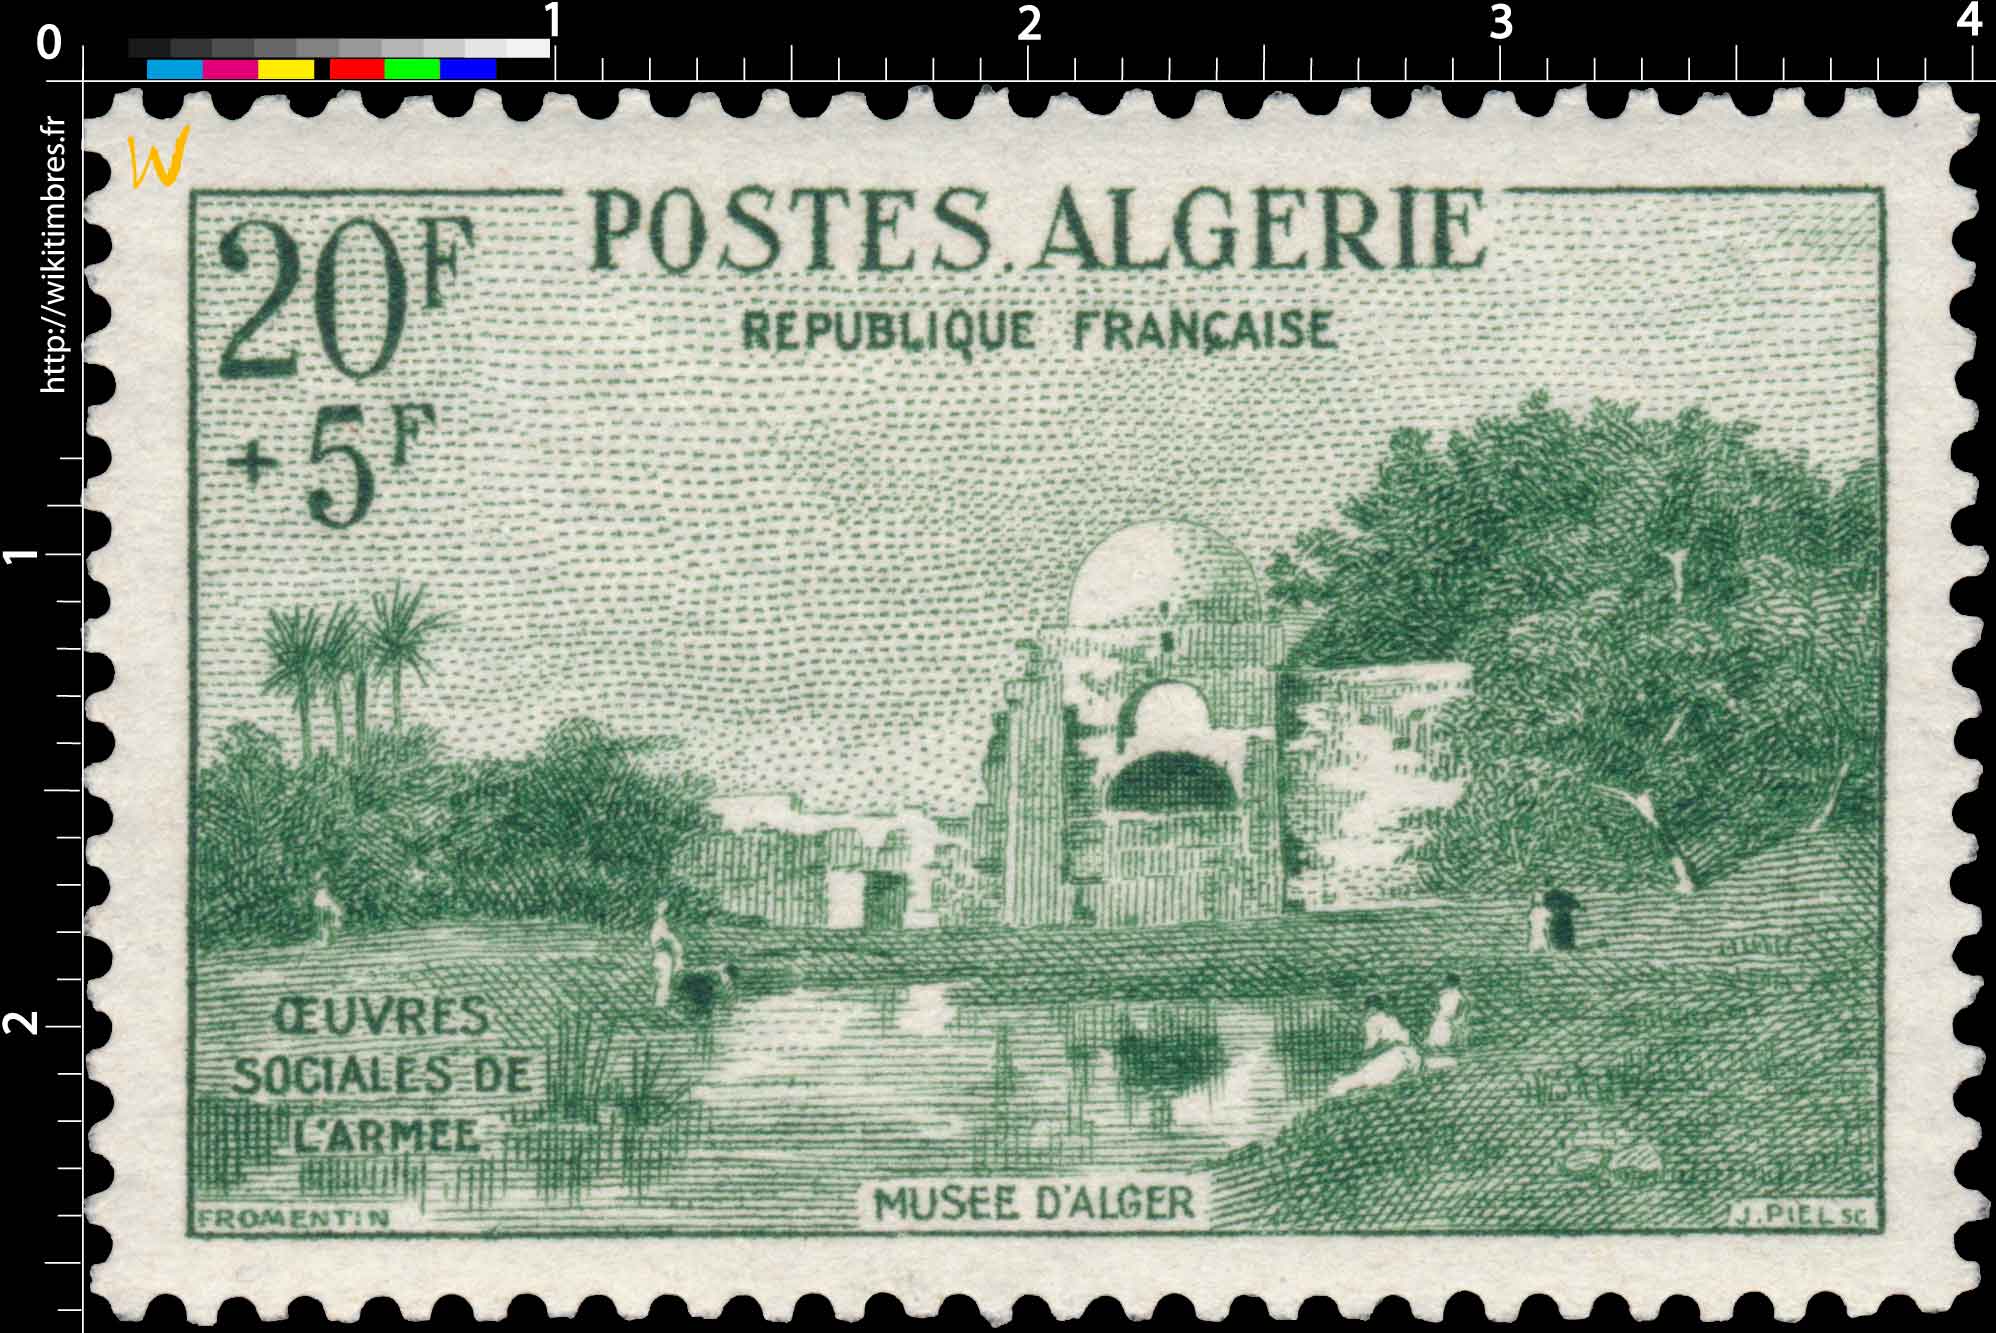 Algérie - Oued, par Fromentin